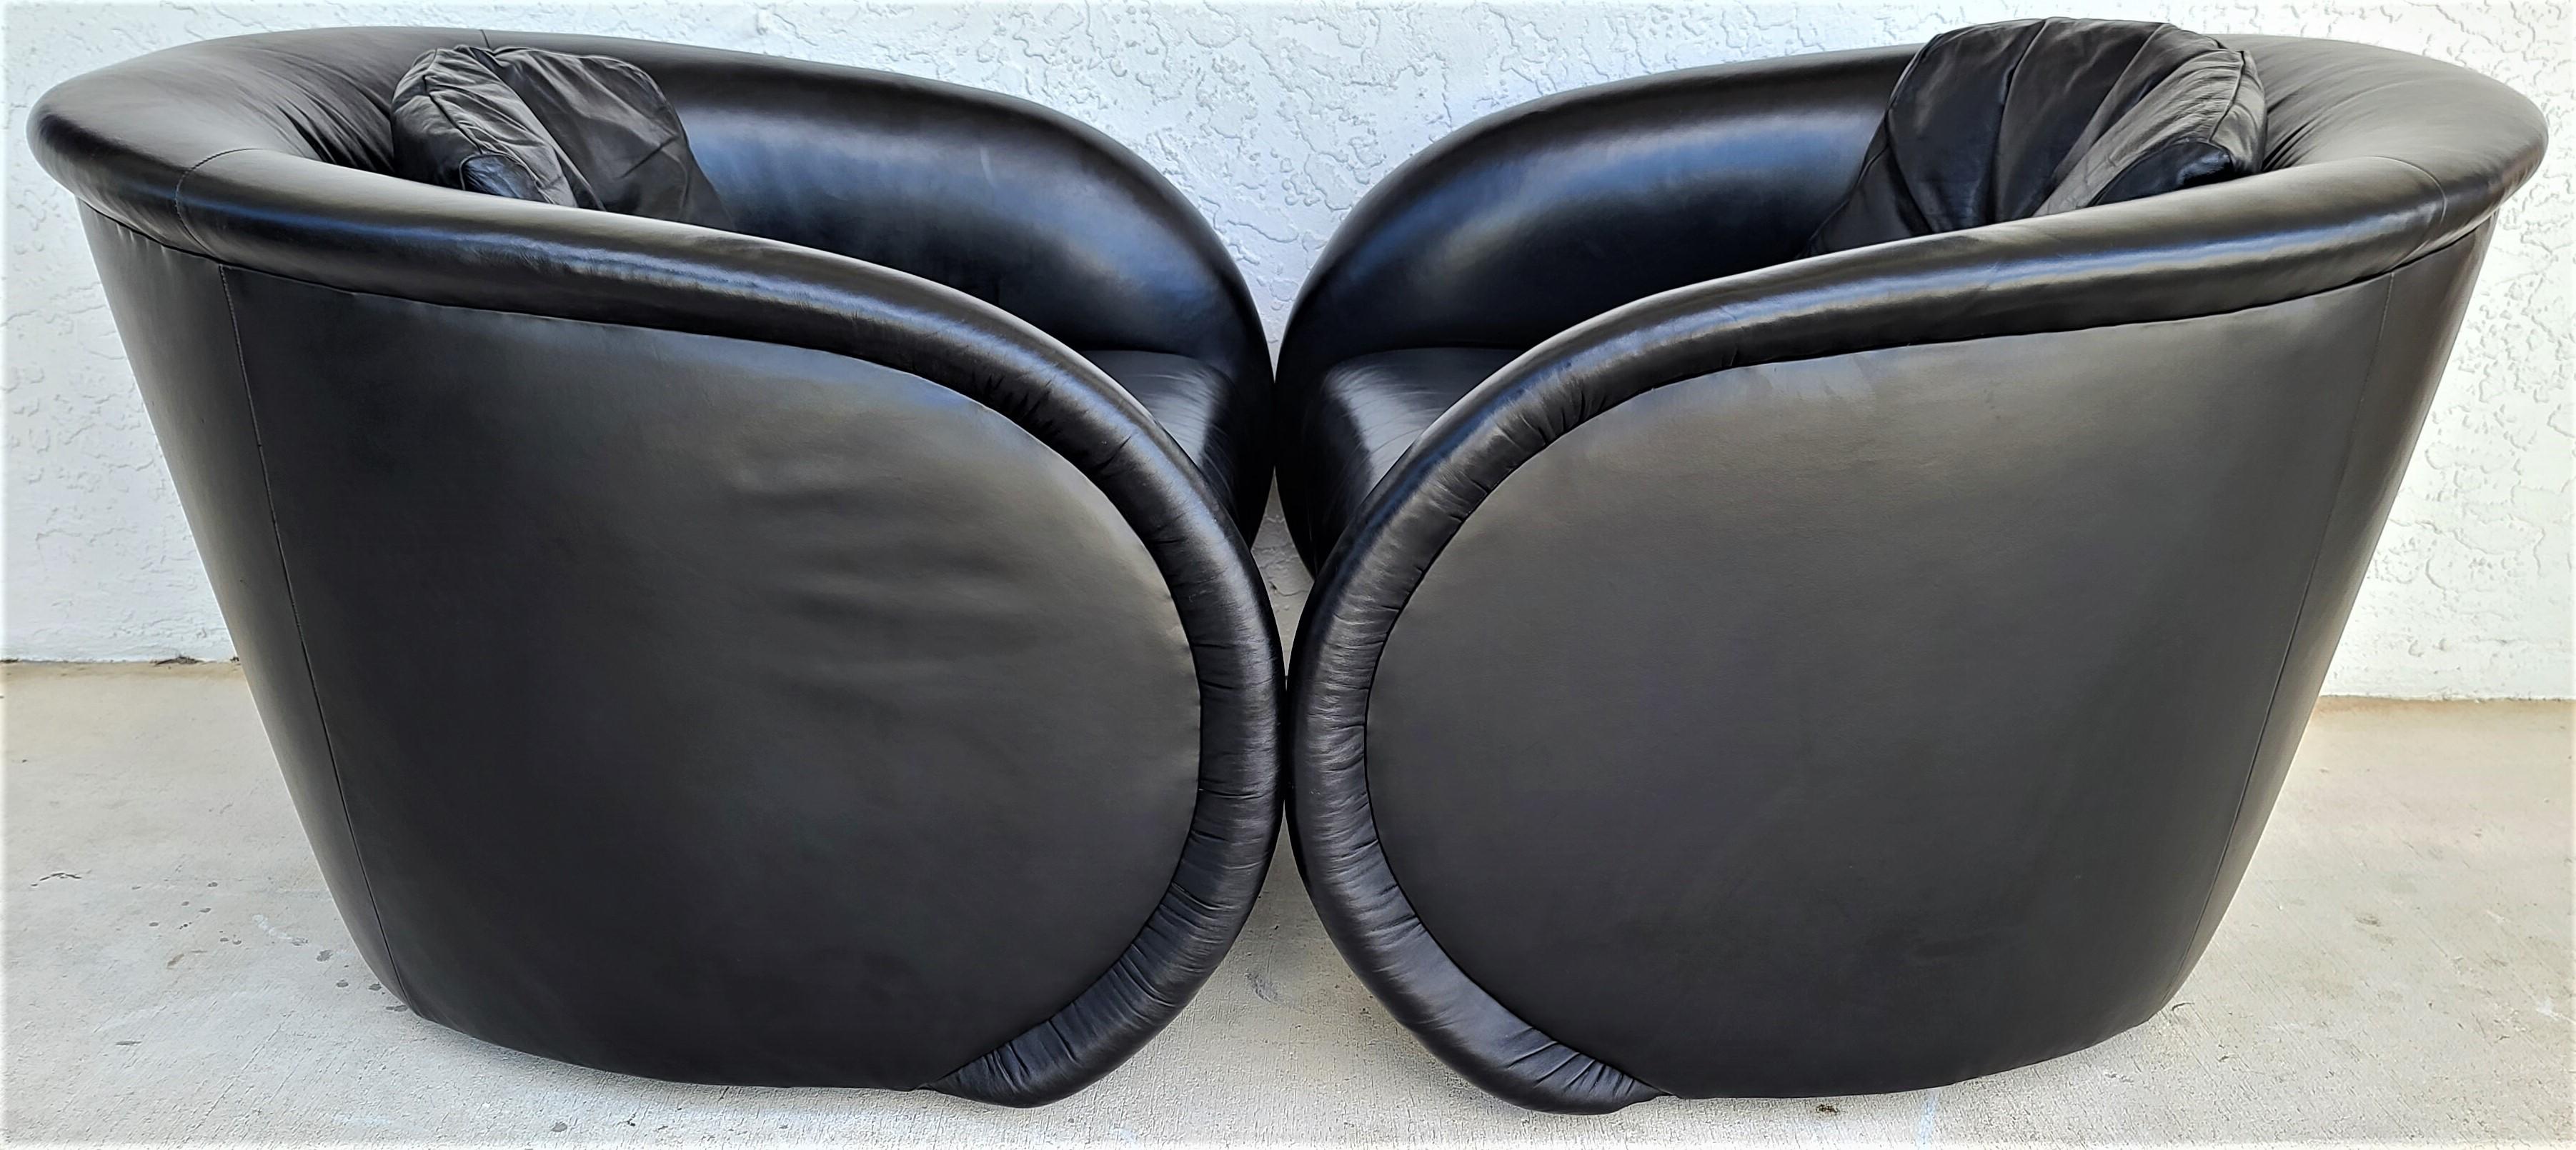 natuzzi cora leather swivel chair